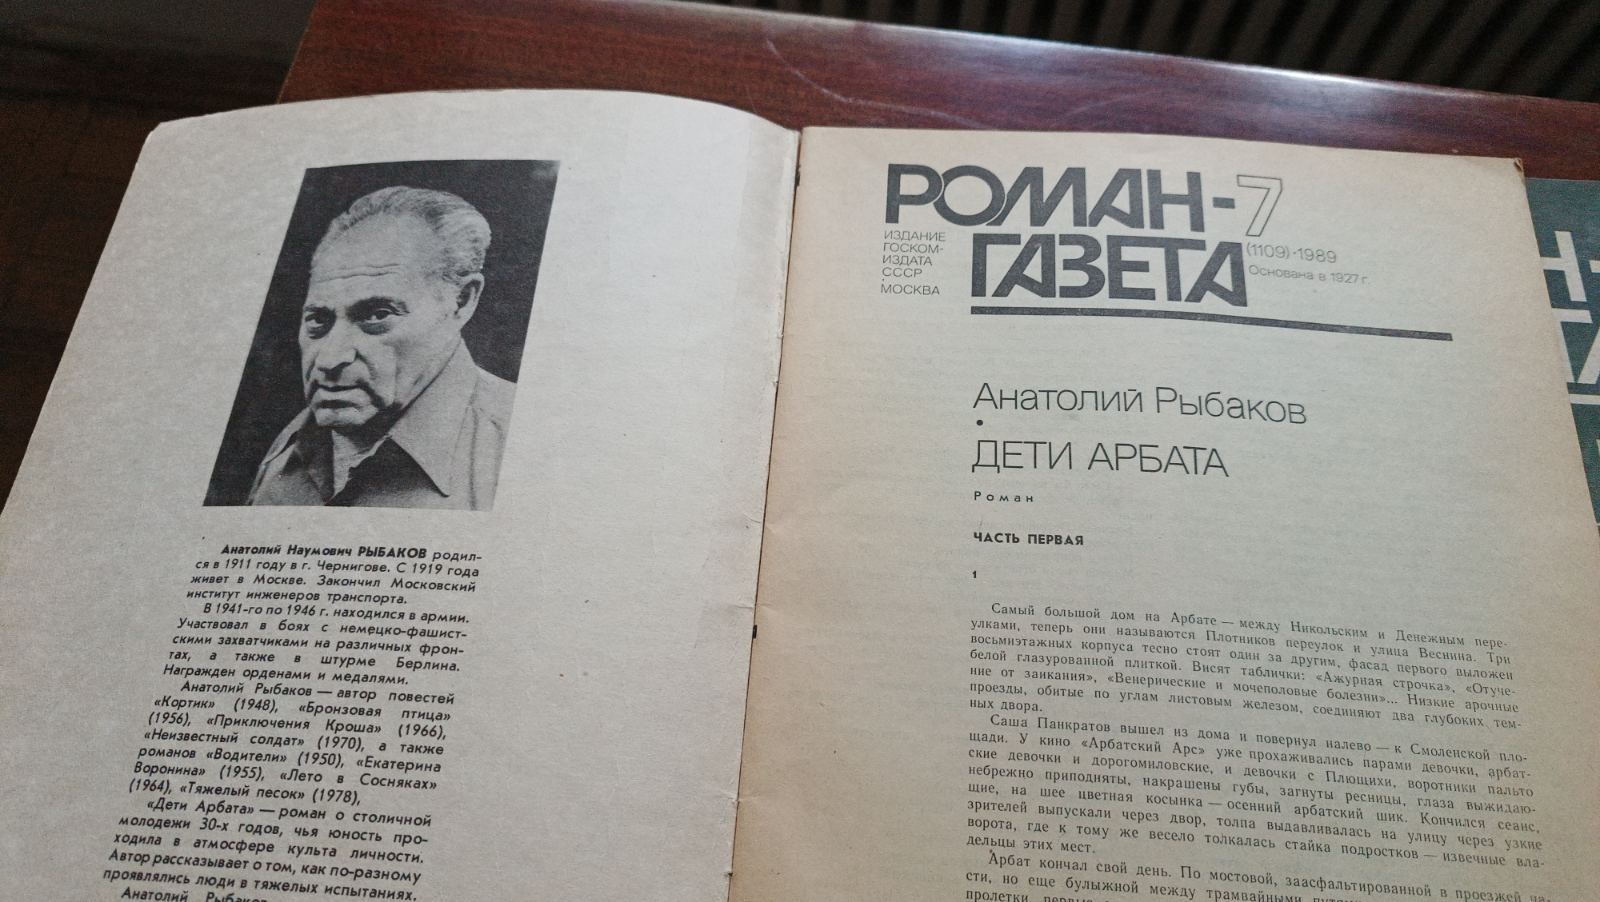 Роман-газета " Дети Арбата" 1989